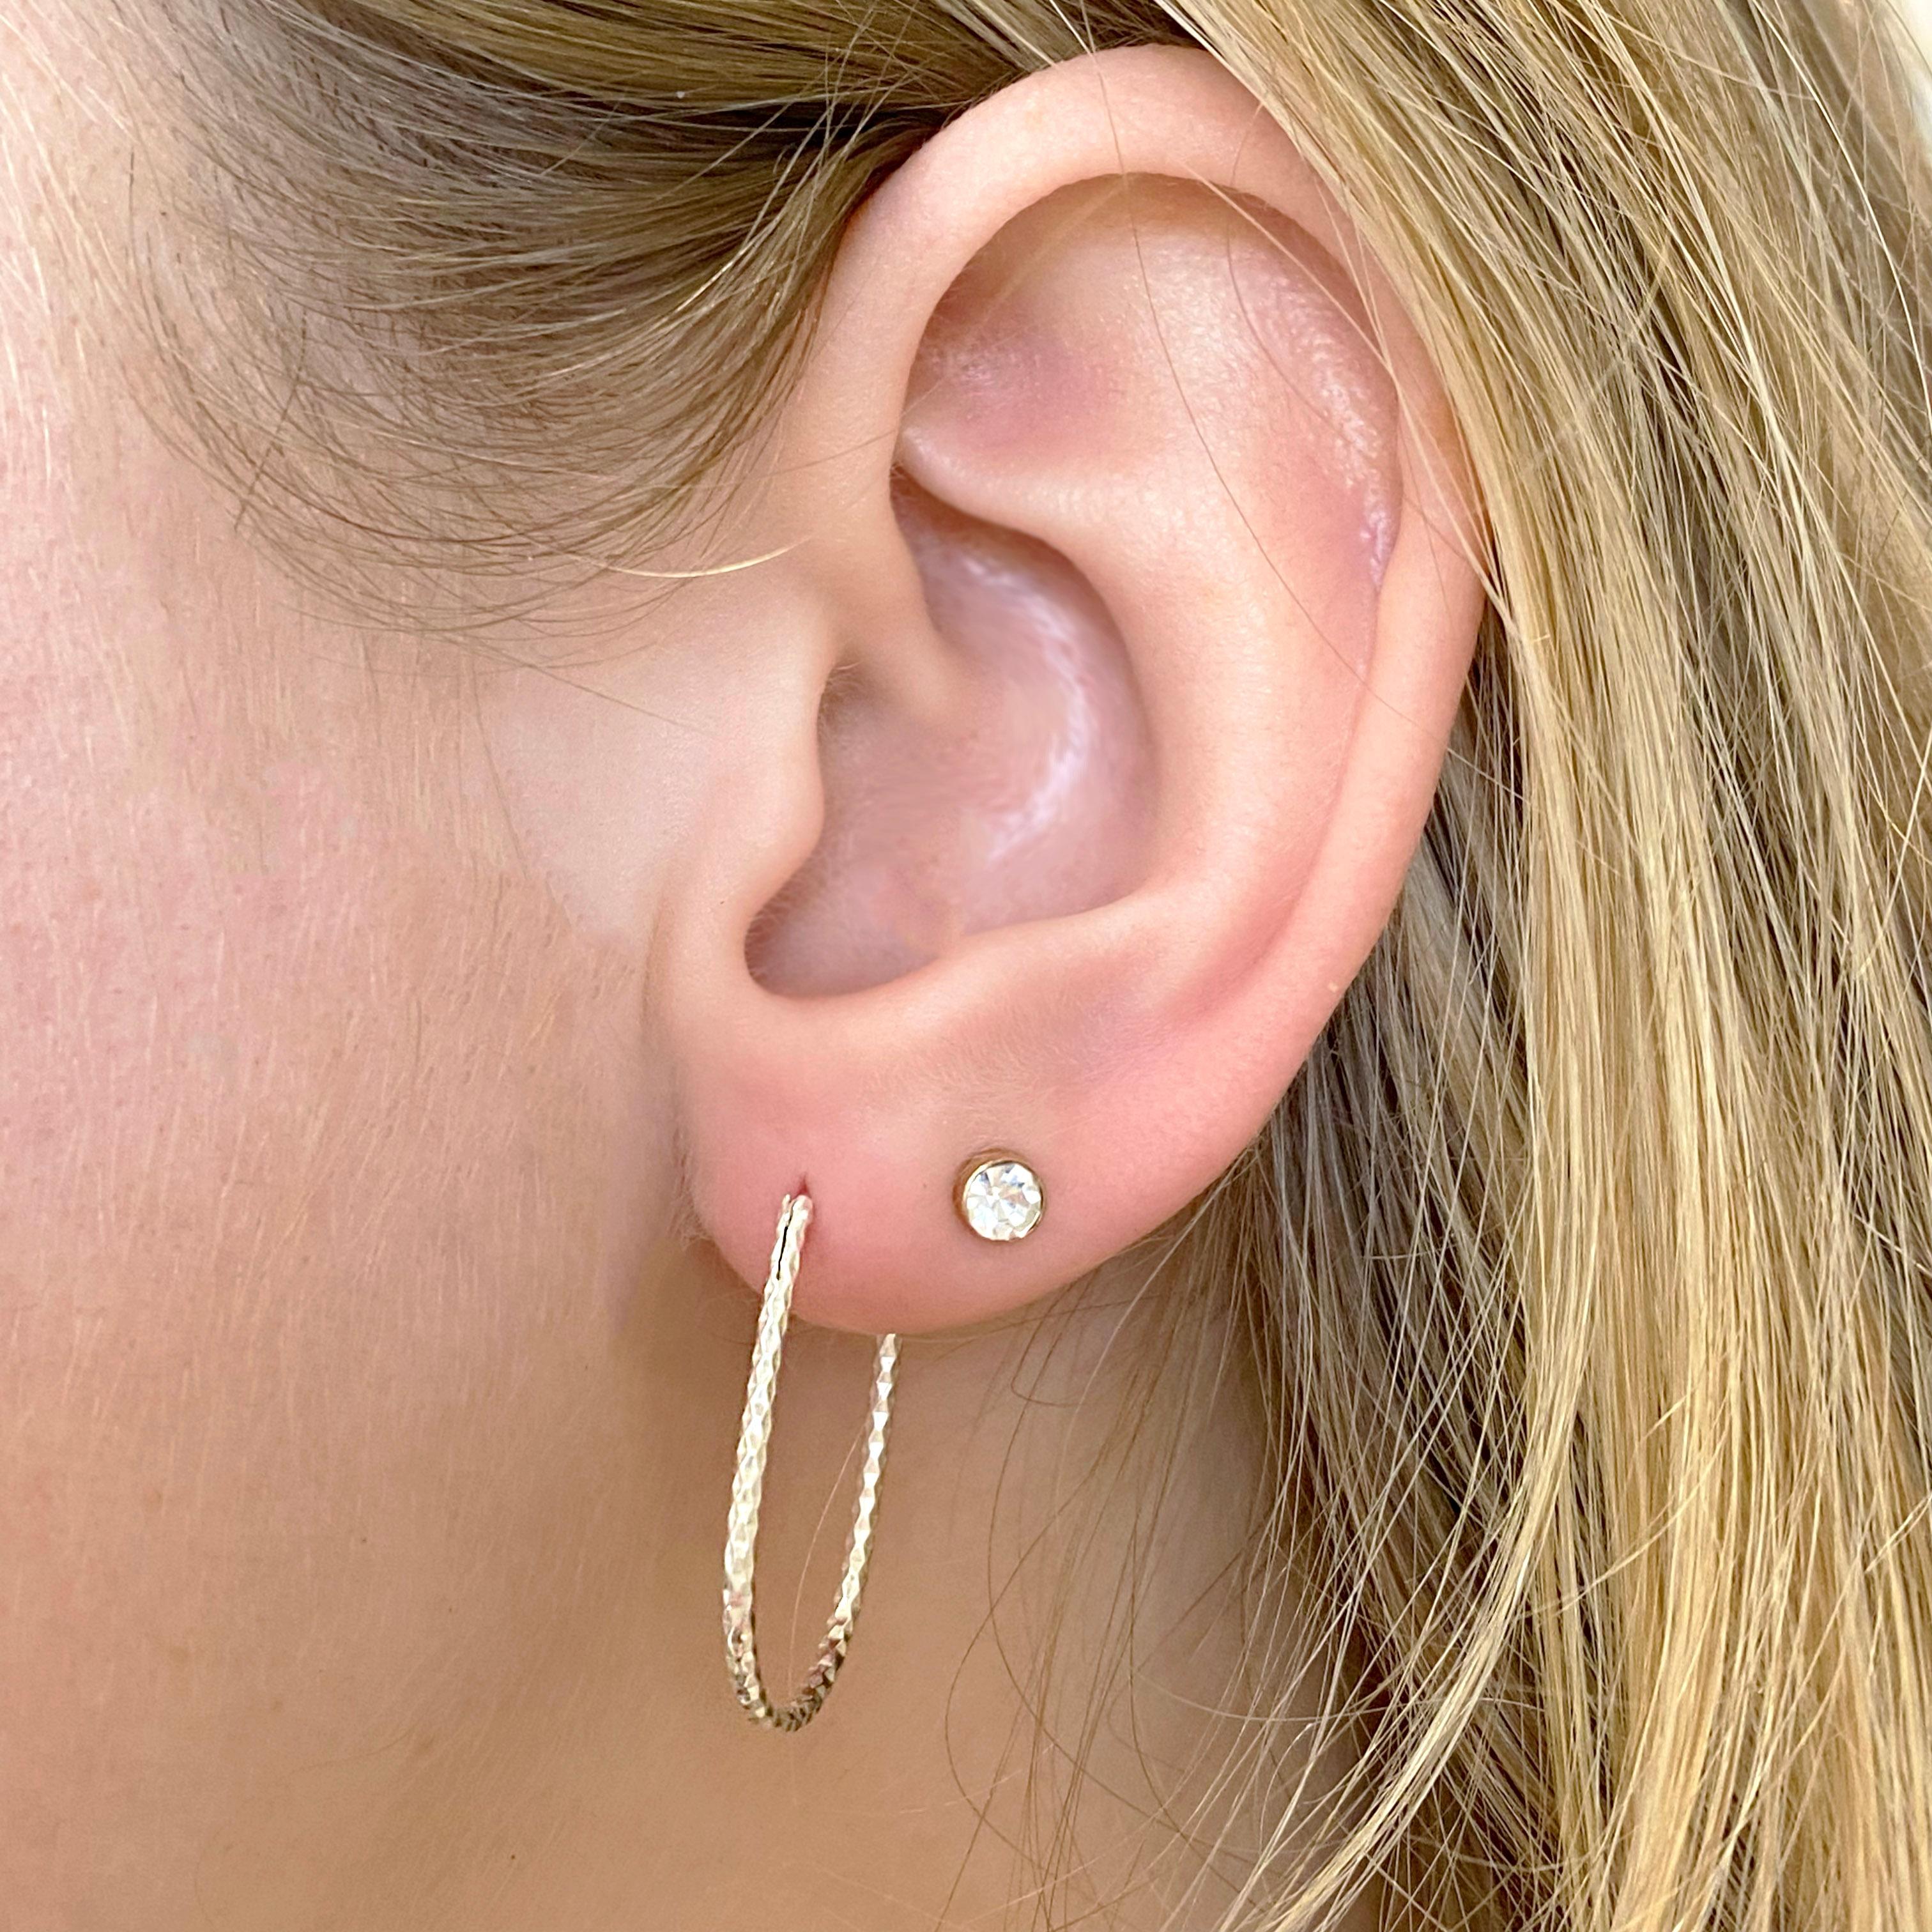 Les détails de ces magnifiques boucles d'oreilles sont indiqués ci-dessous :
1 Ensemble
Qualité du métal : Argent Sterling
Type de boucle d'oreille : Cercle
Dimensions des boucles d'oreilles ; 1.5 millimètres x 1.0 pouces
Type de poteau : Poteau